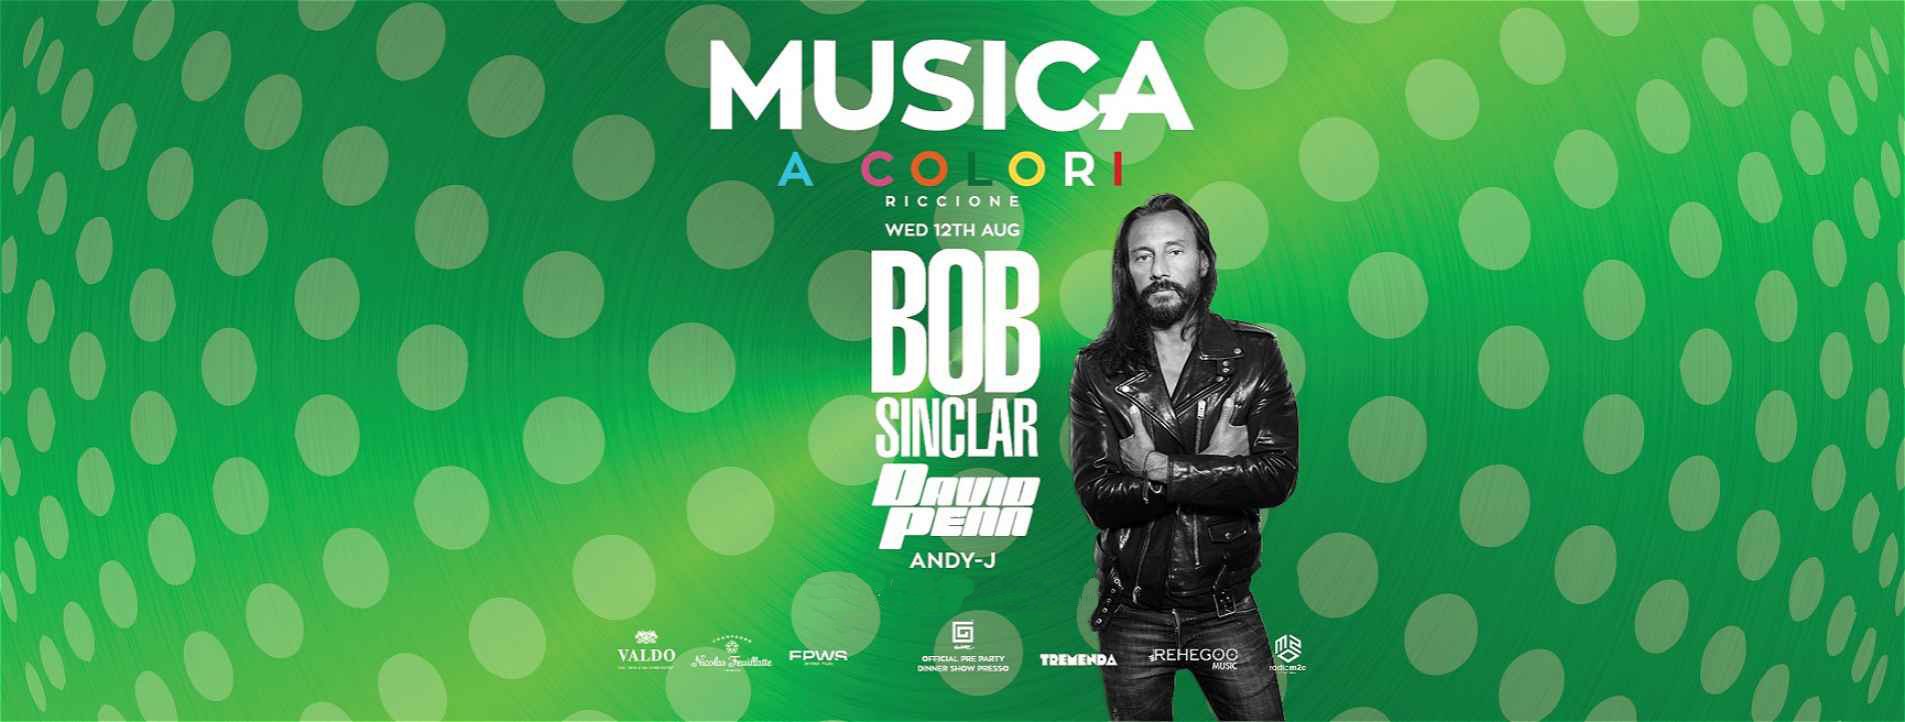 BOB SINCLAR MUSICA RICCIONE 12 08 2020